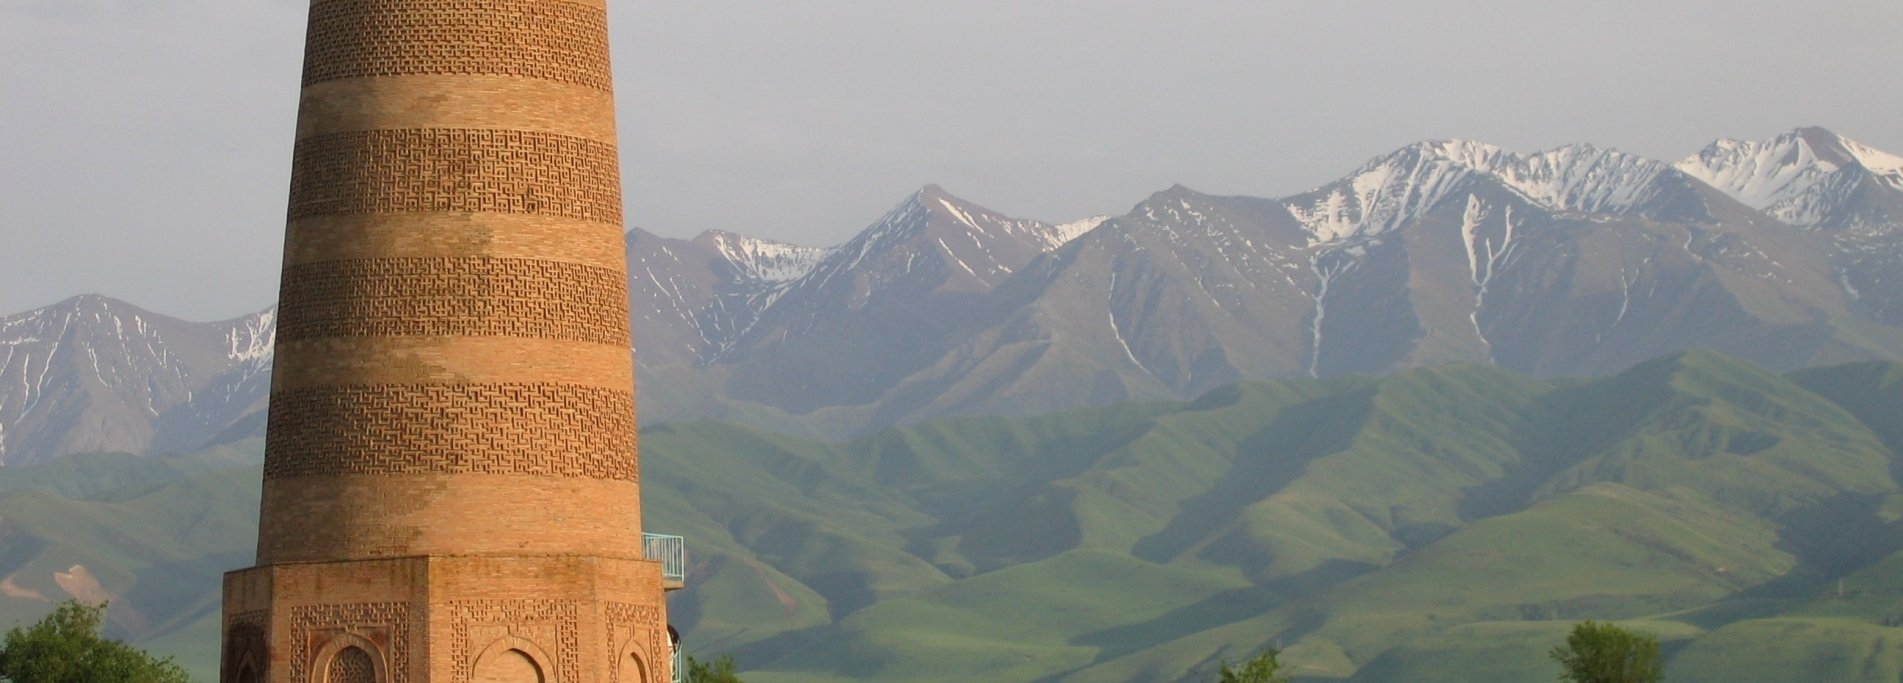 Journey in Kyrgyzstan - One week trip in Kyrgyzstan 